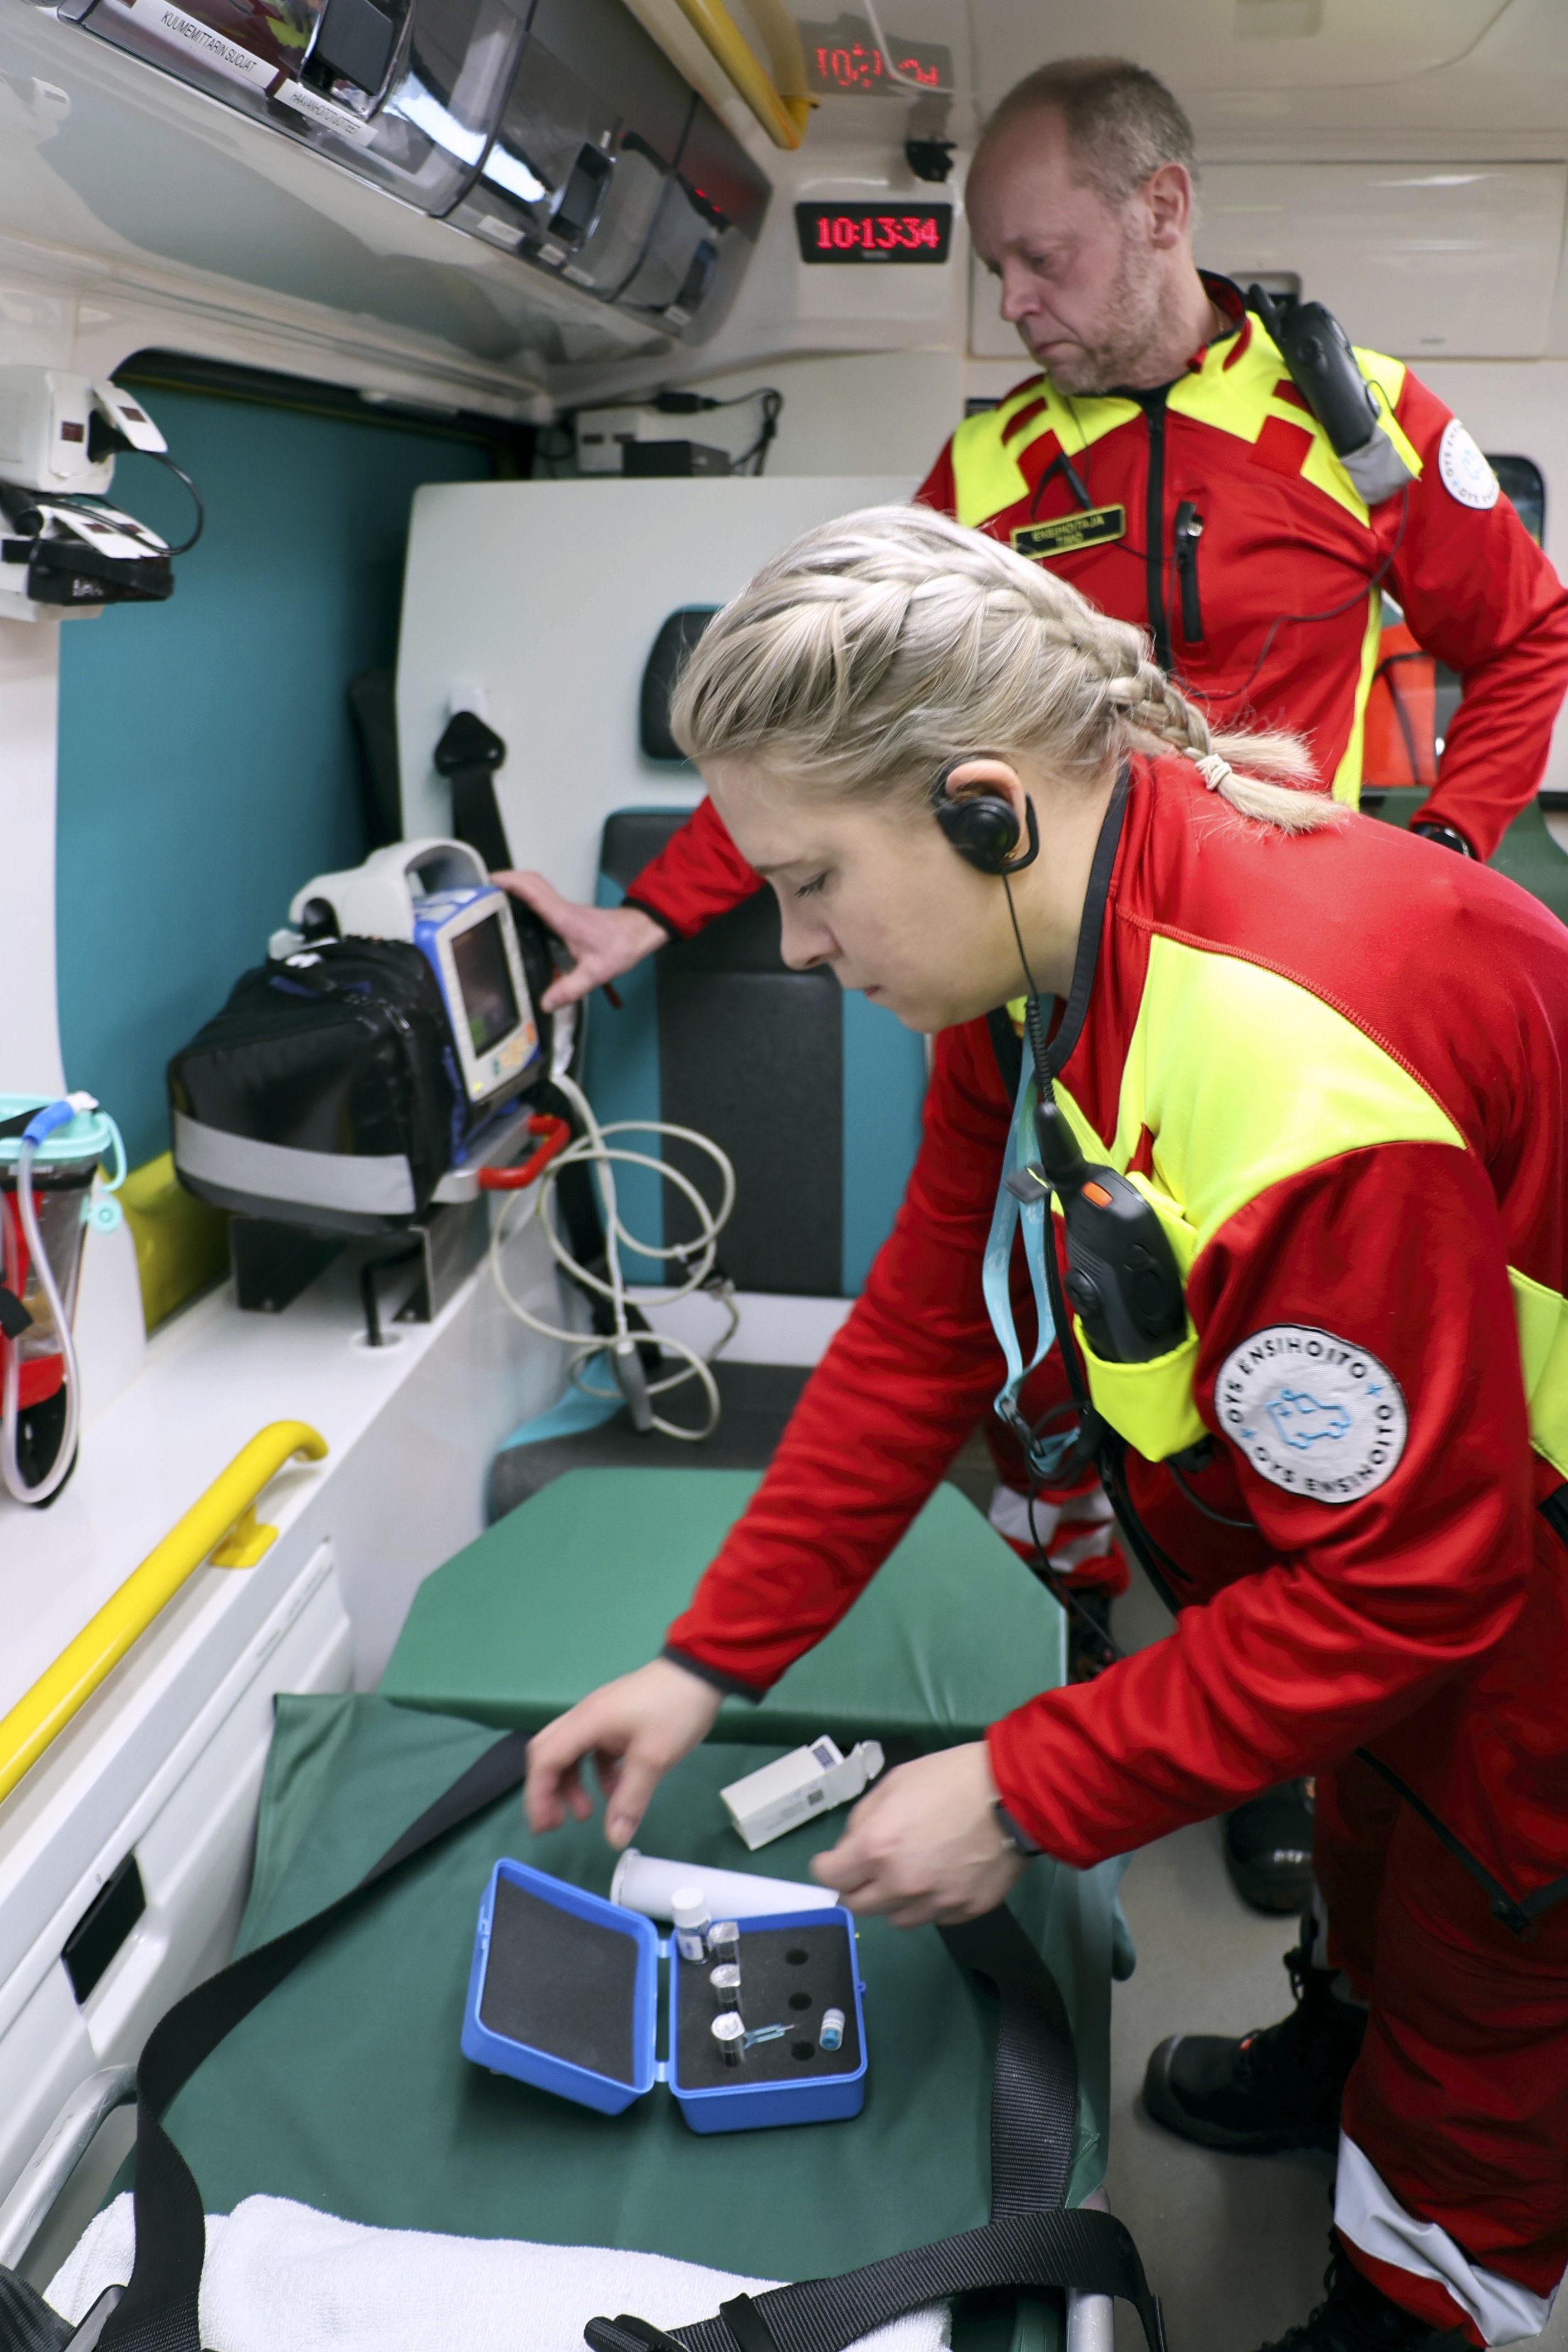 Sairaanhoitaja Johanna Mikkonen ja ensihoitaja Timo Sassi tarkistavat ambulanssin välineistöä.